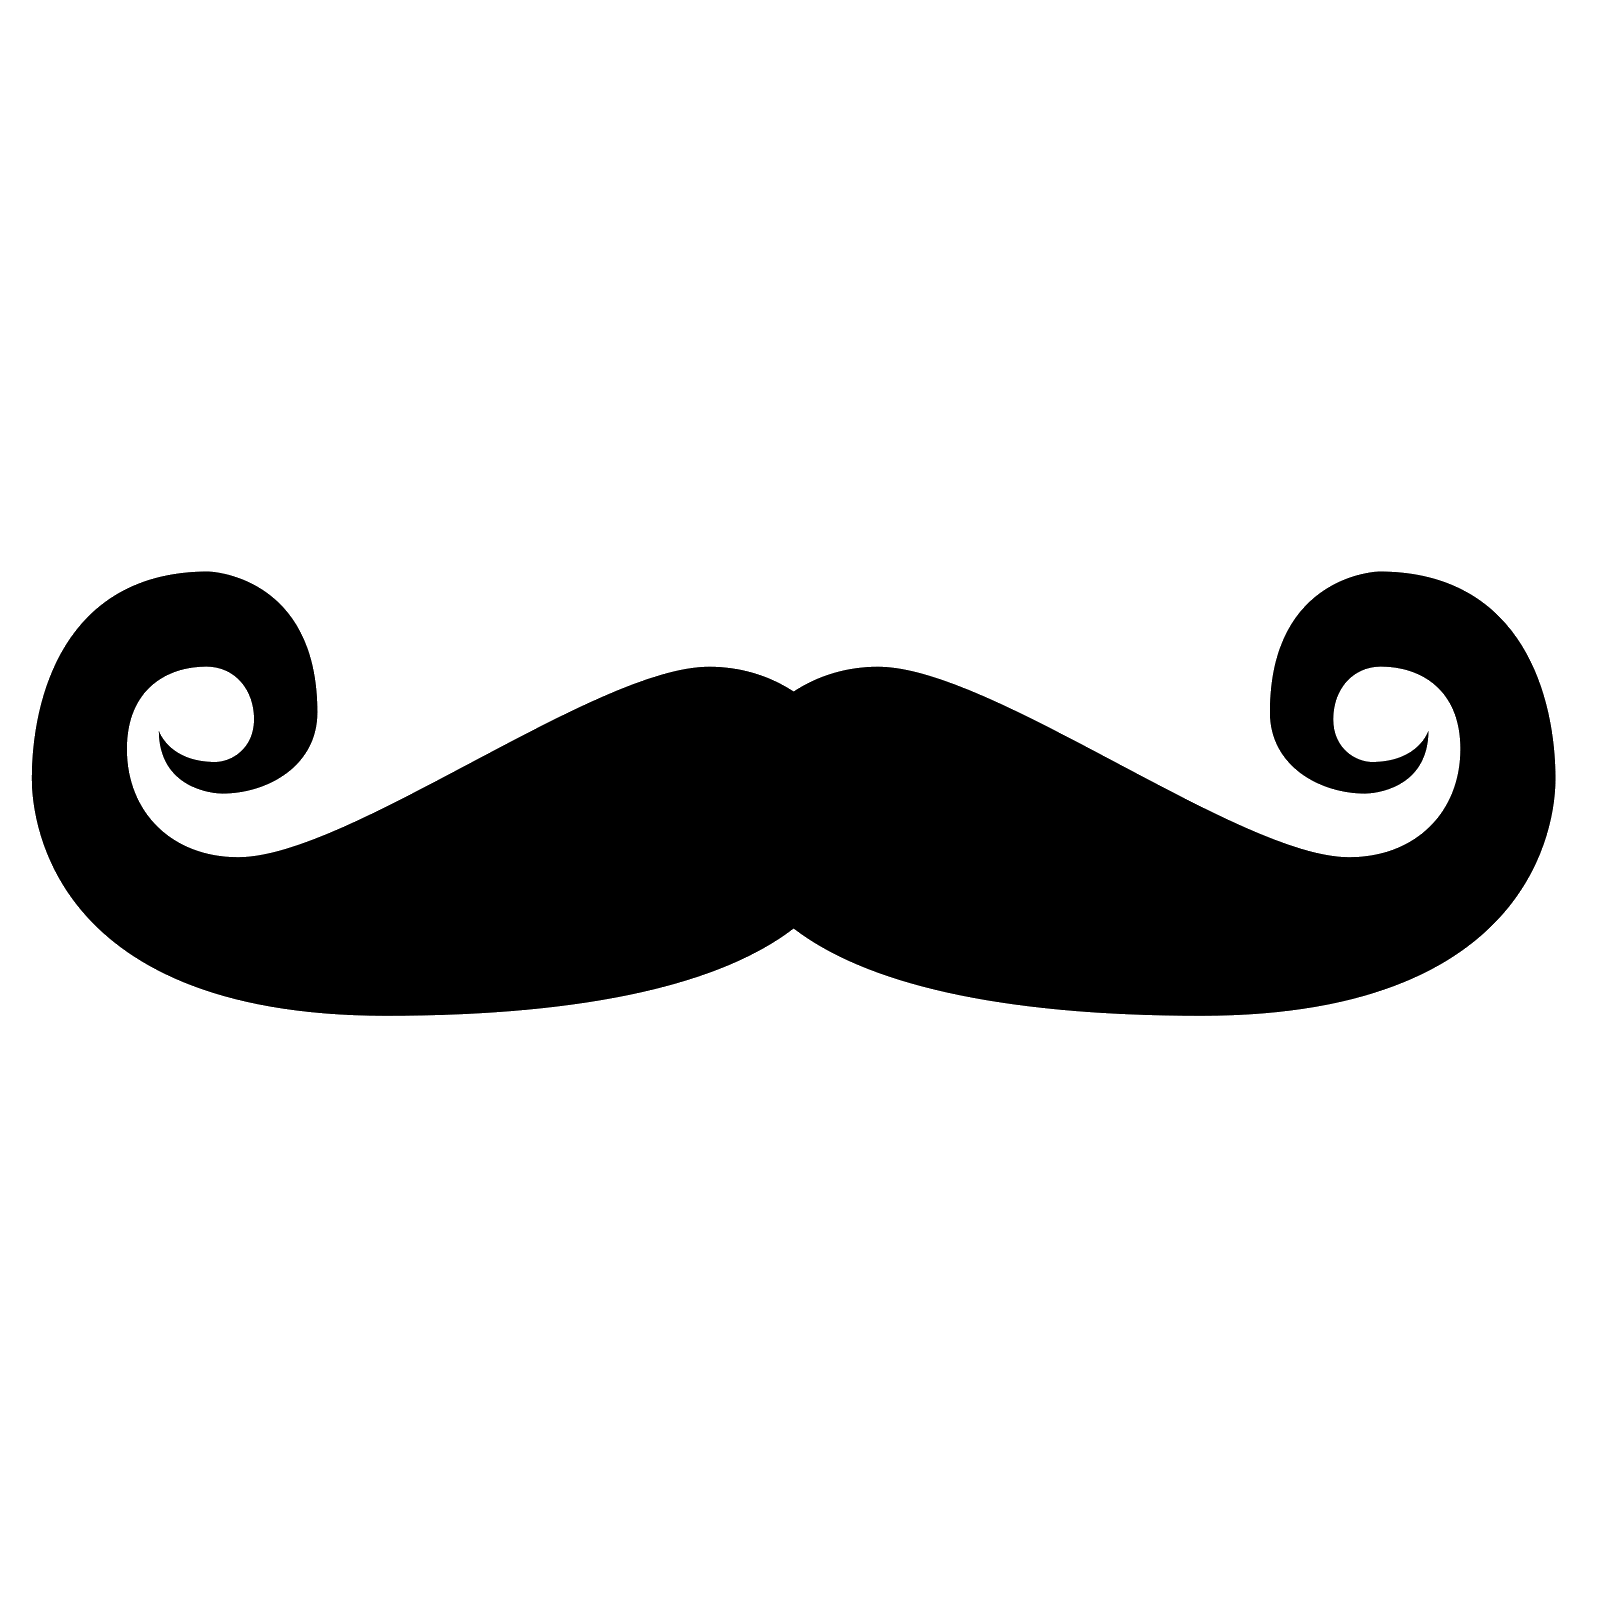 Moustache Logo - Moustache PNG images free download